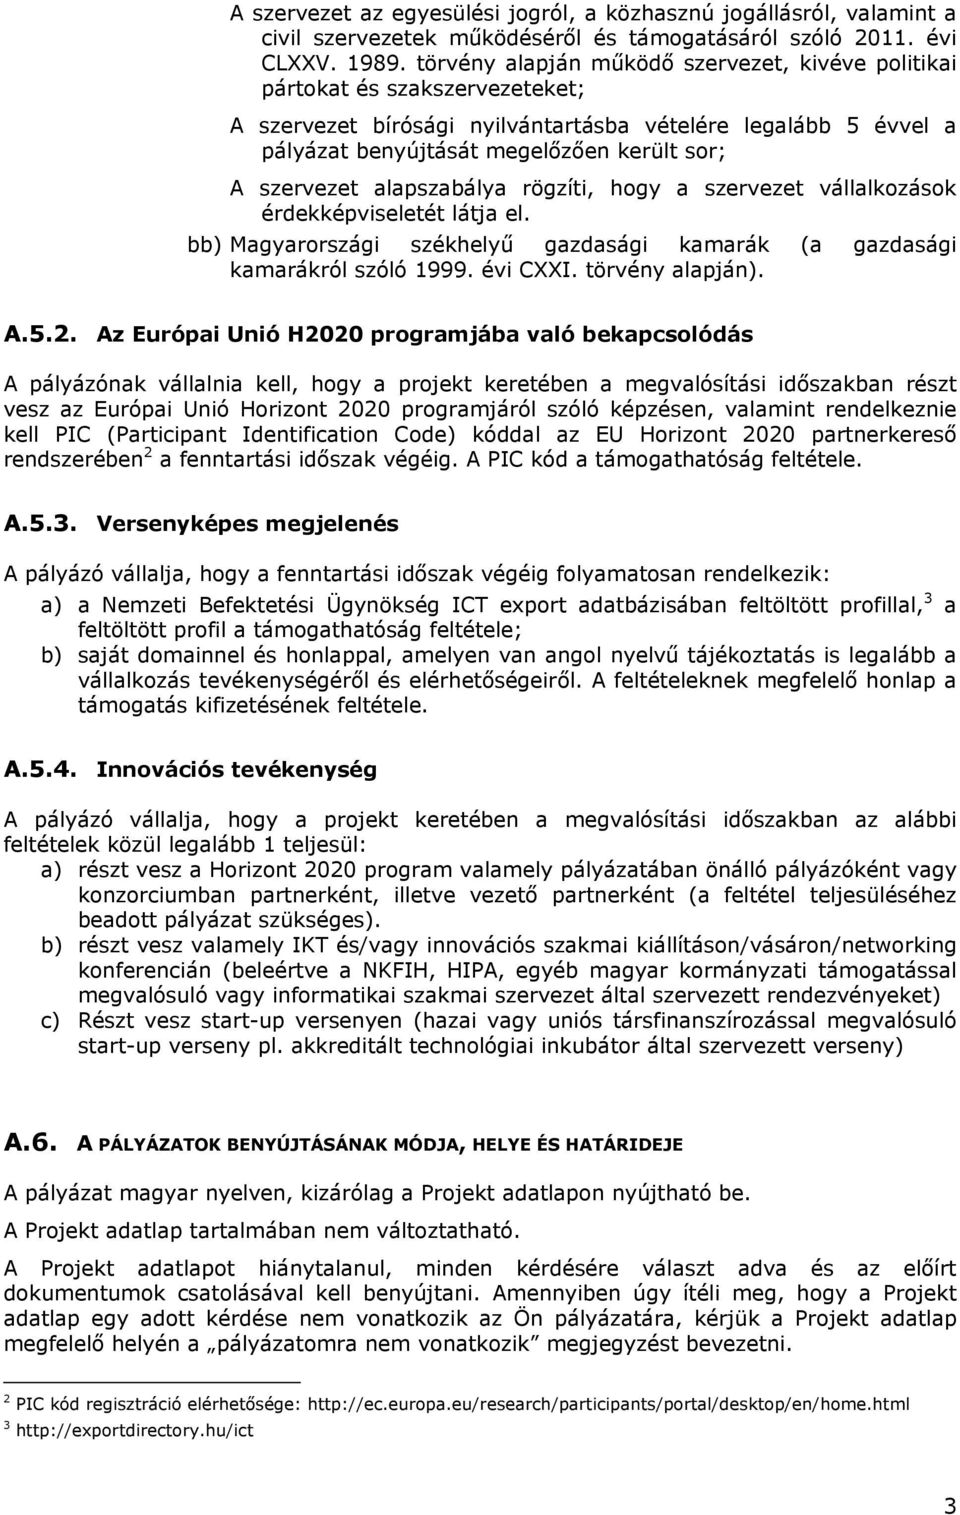 szervezet alapszabálya rögzíti, hogy a szervezet vállalkozások érdekképviseletét látja el. bb) Magyarországi székhelyű gazdasági kamarák (a gazdasági kamarákról szóló 1999. évi CXXI. törvény alapján).